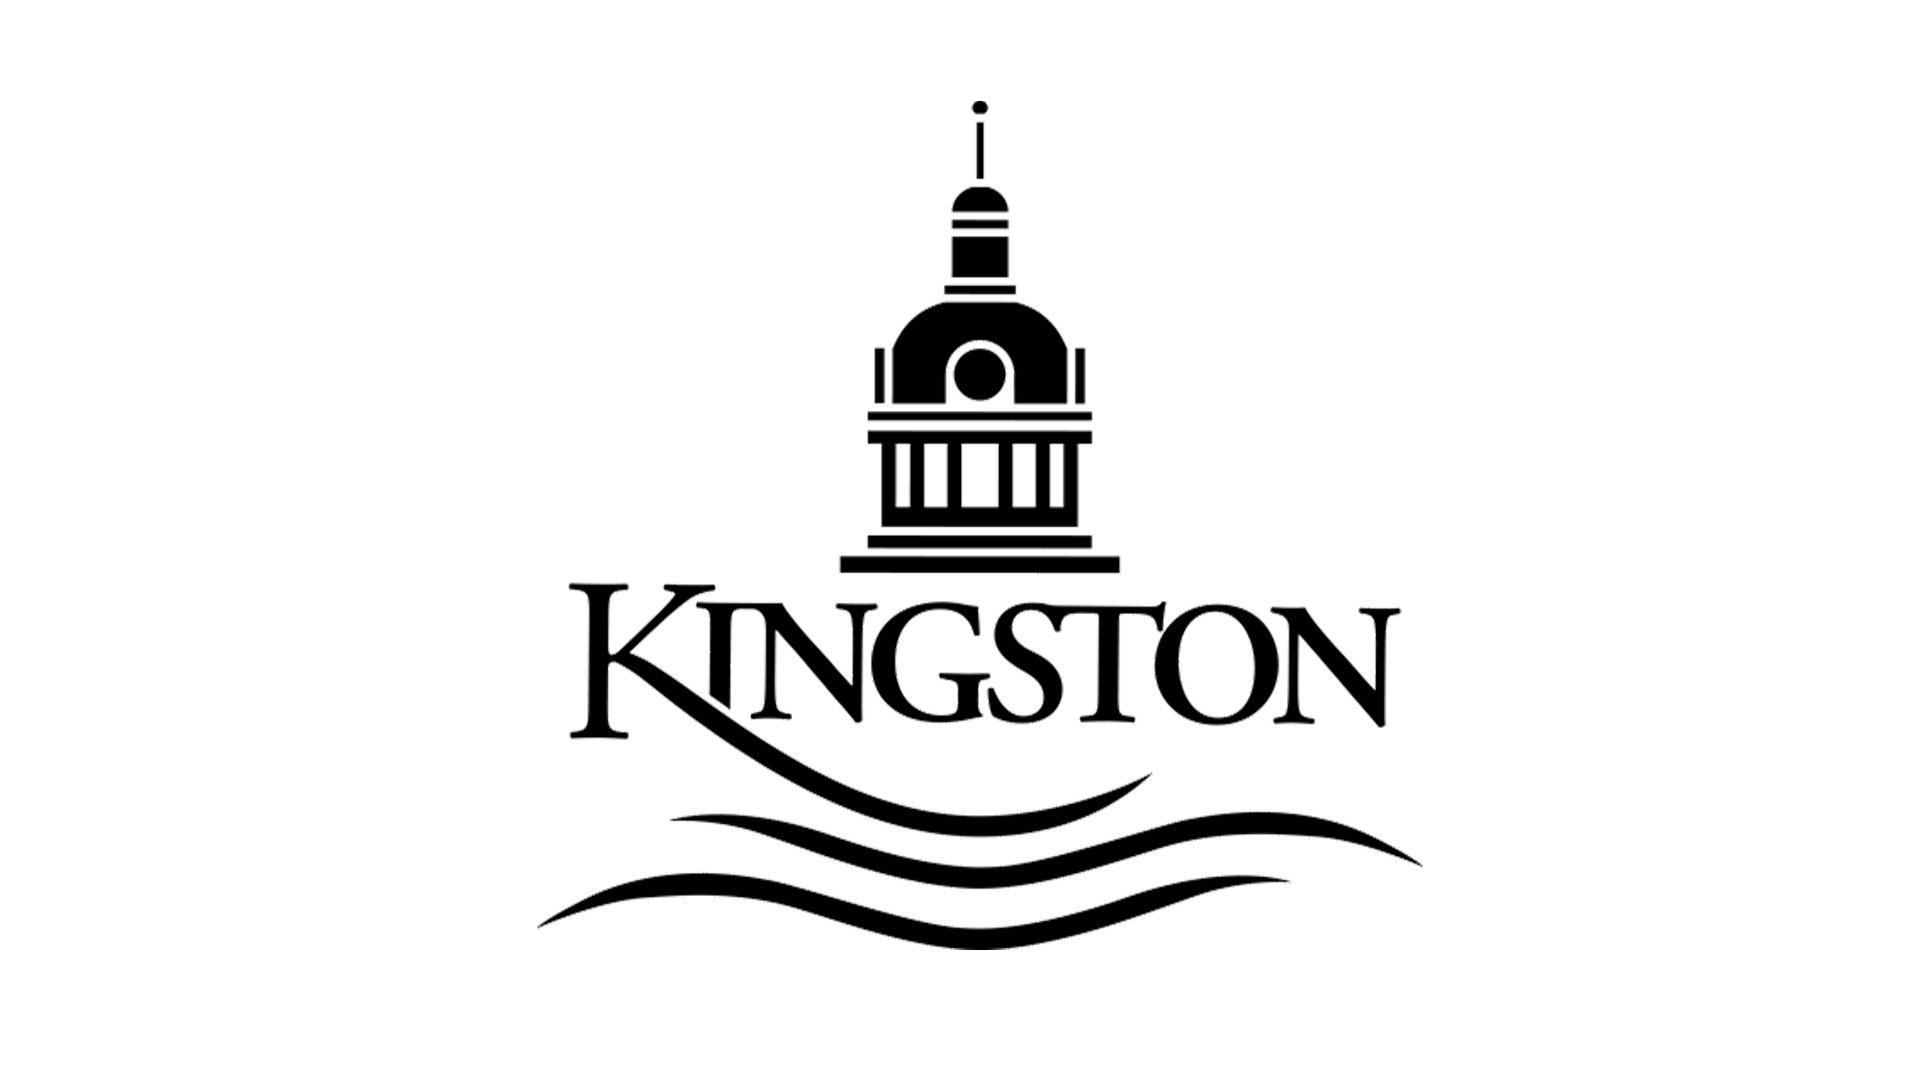 Kingston logo.jpg